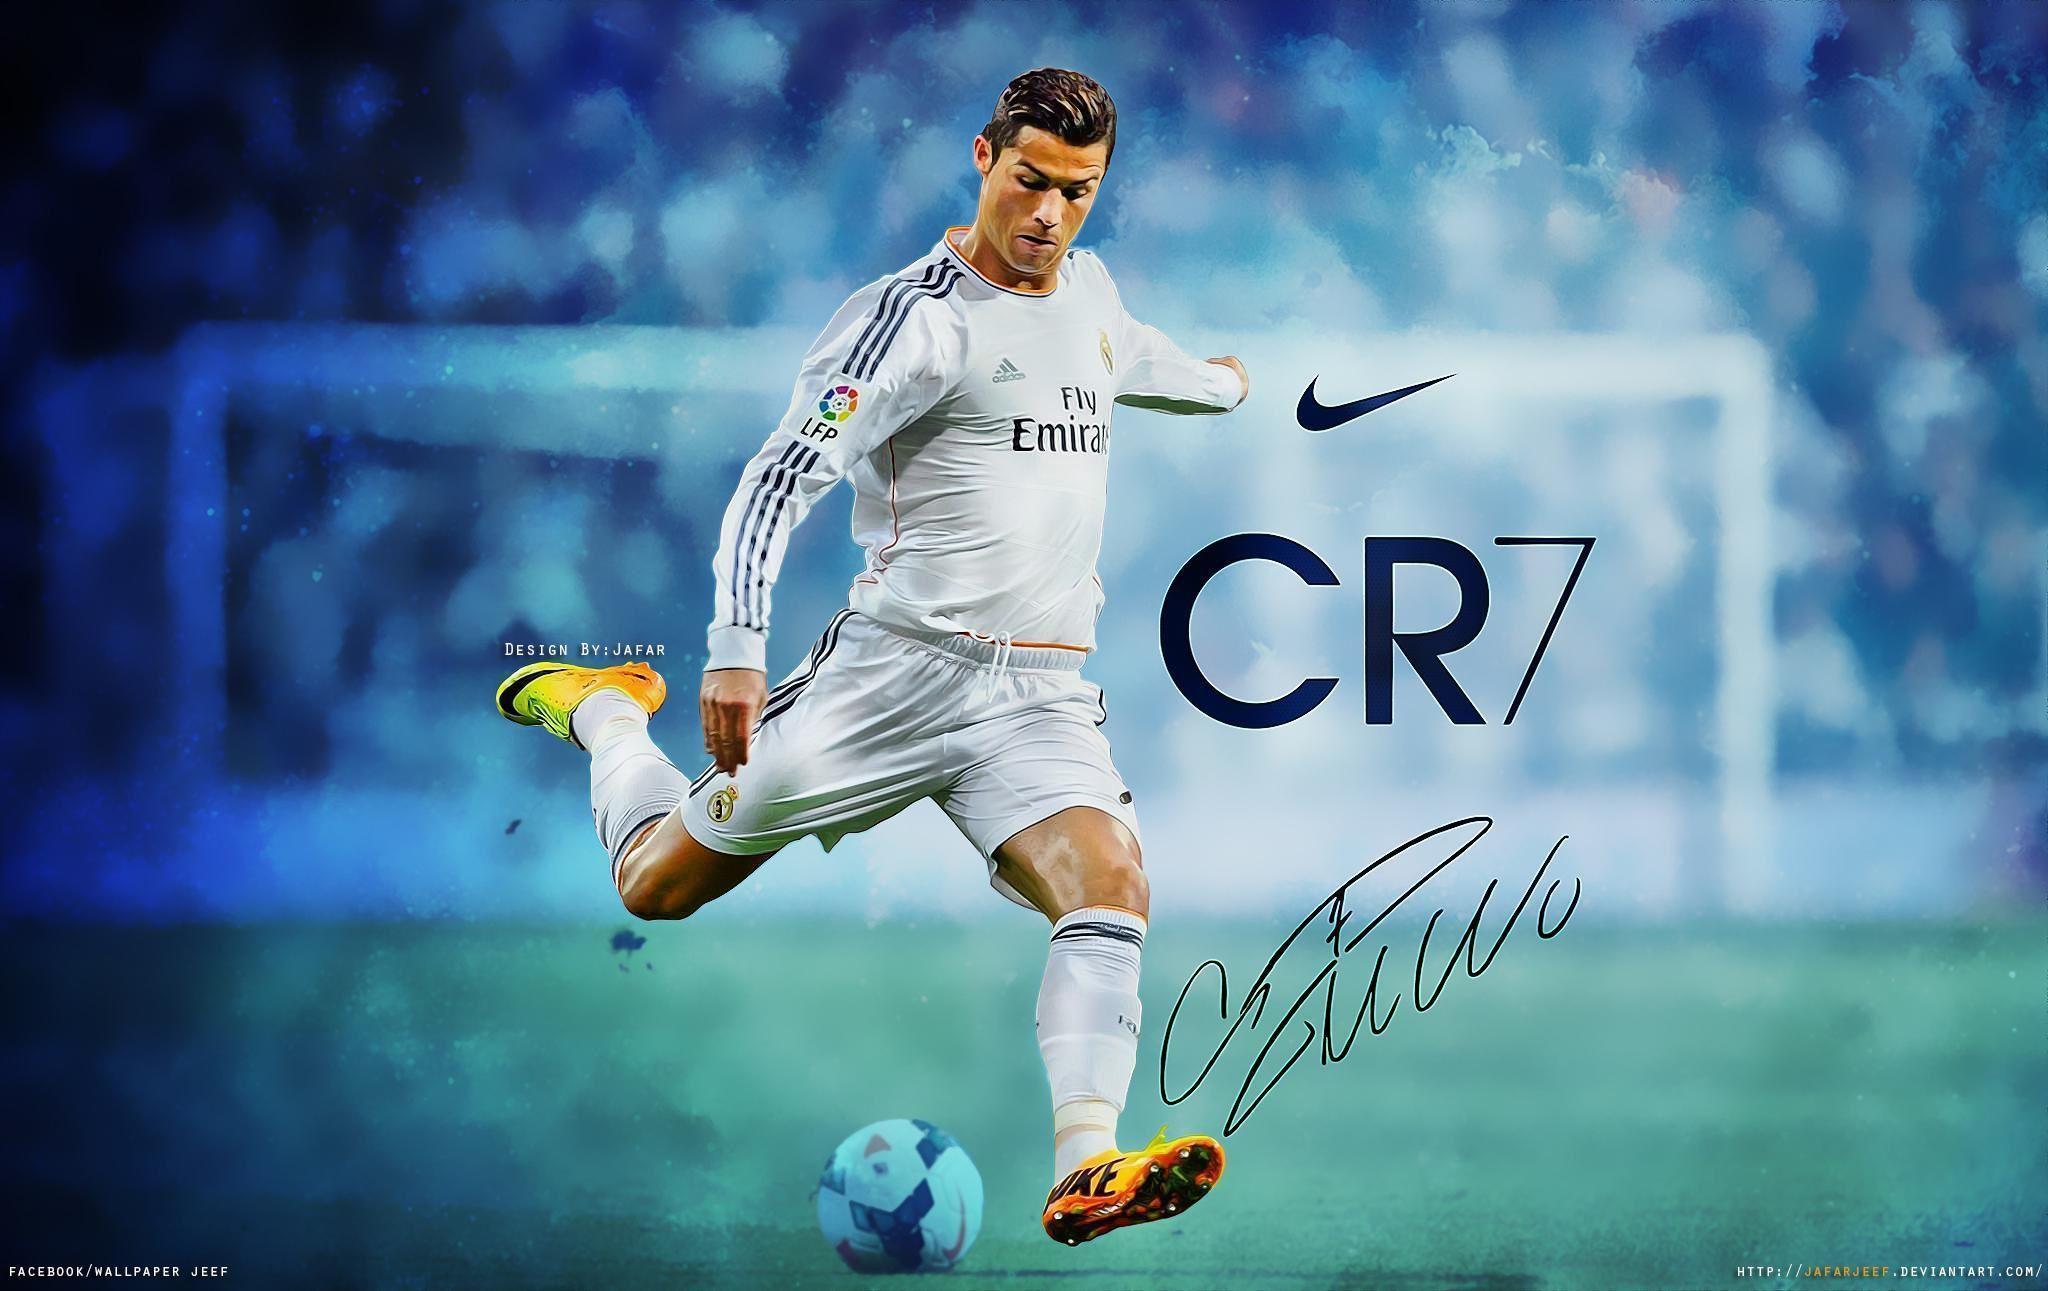 Cristiano Ronaldo Wallpaper, Picture, Image